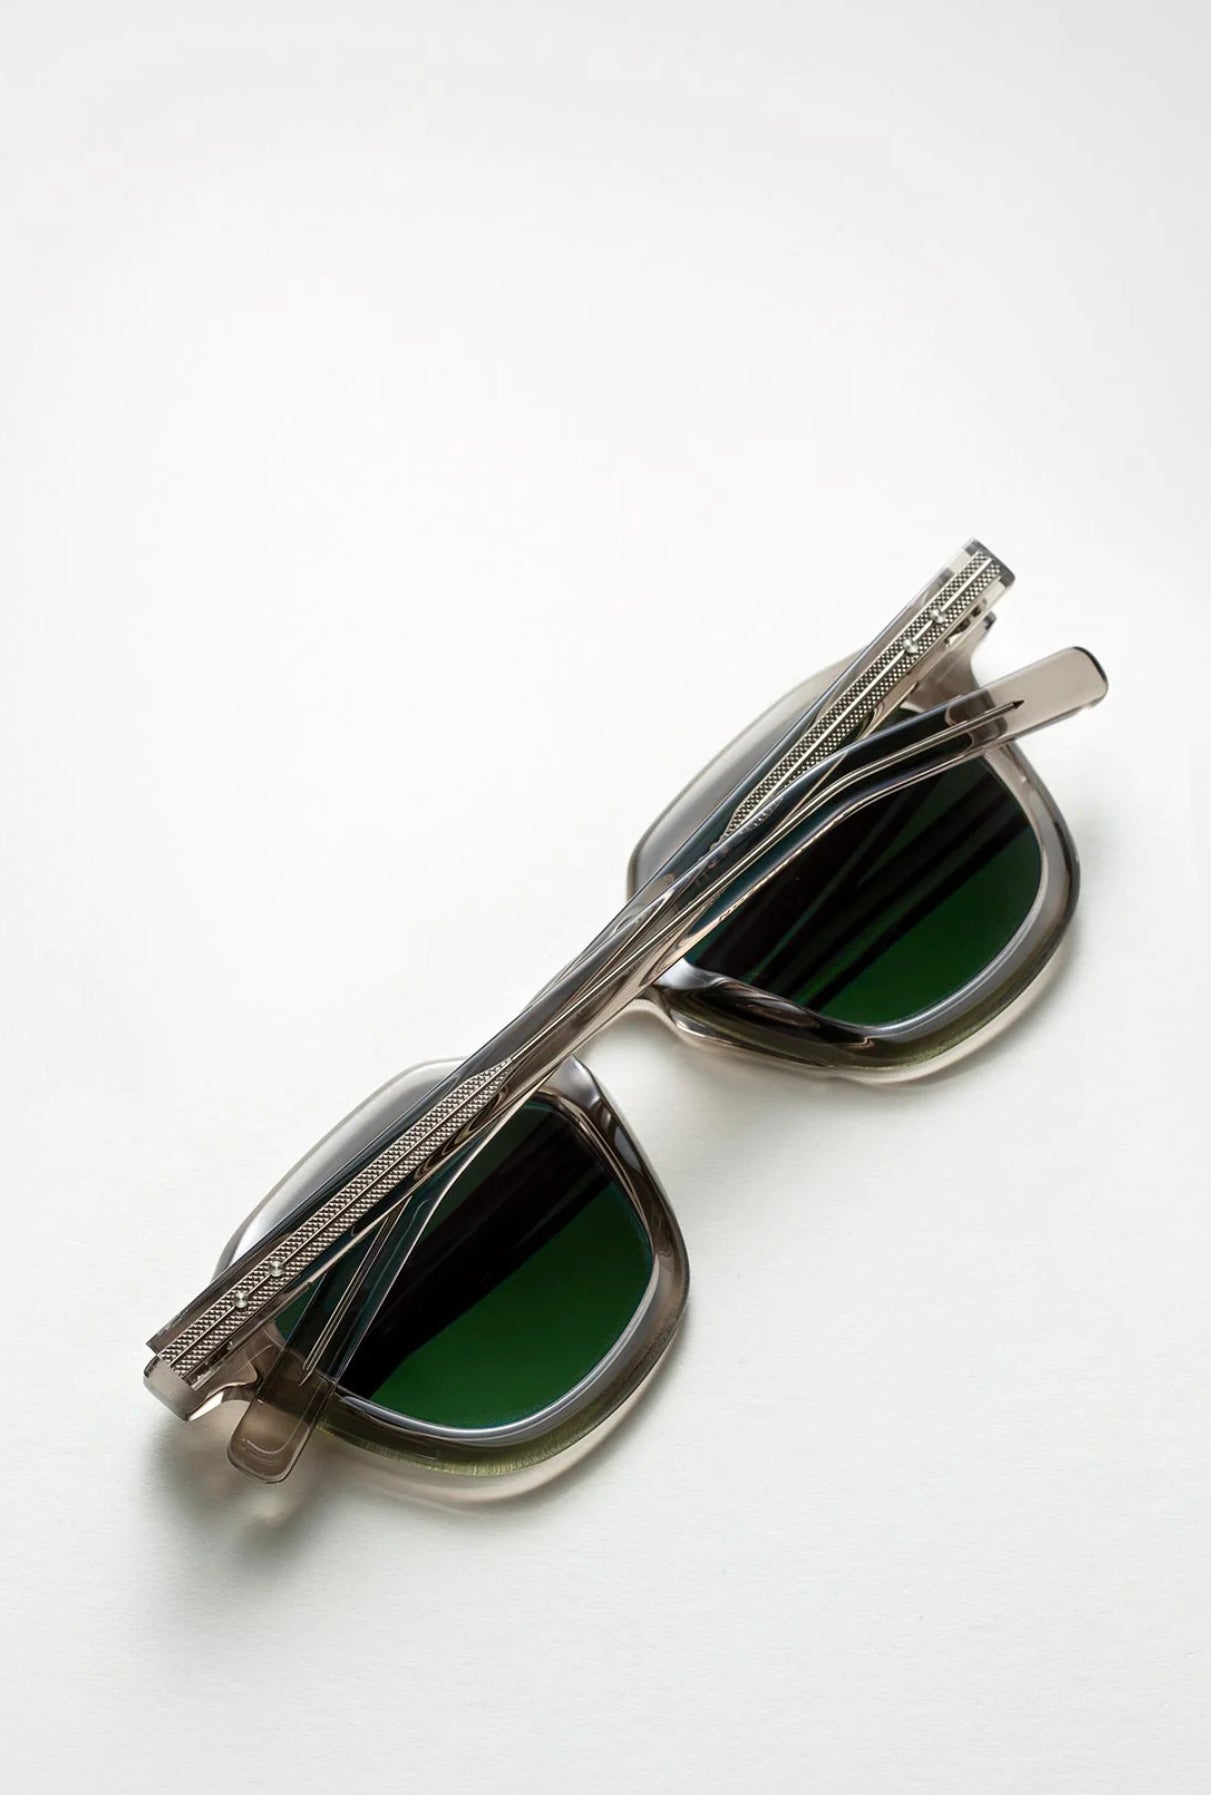 Oscar Magnuson - Sunglasses Deckard OM5 Warm Grey